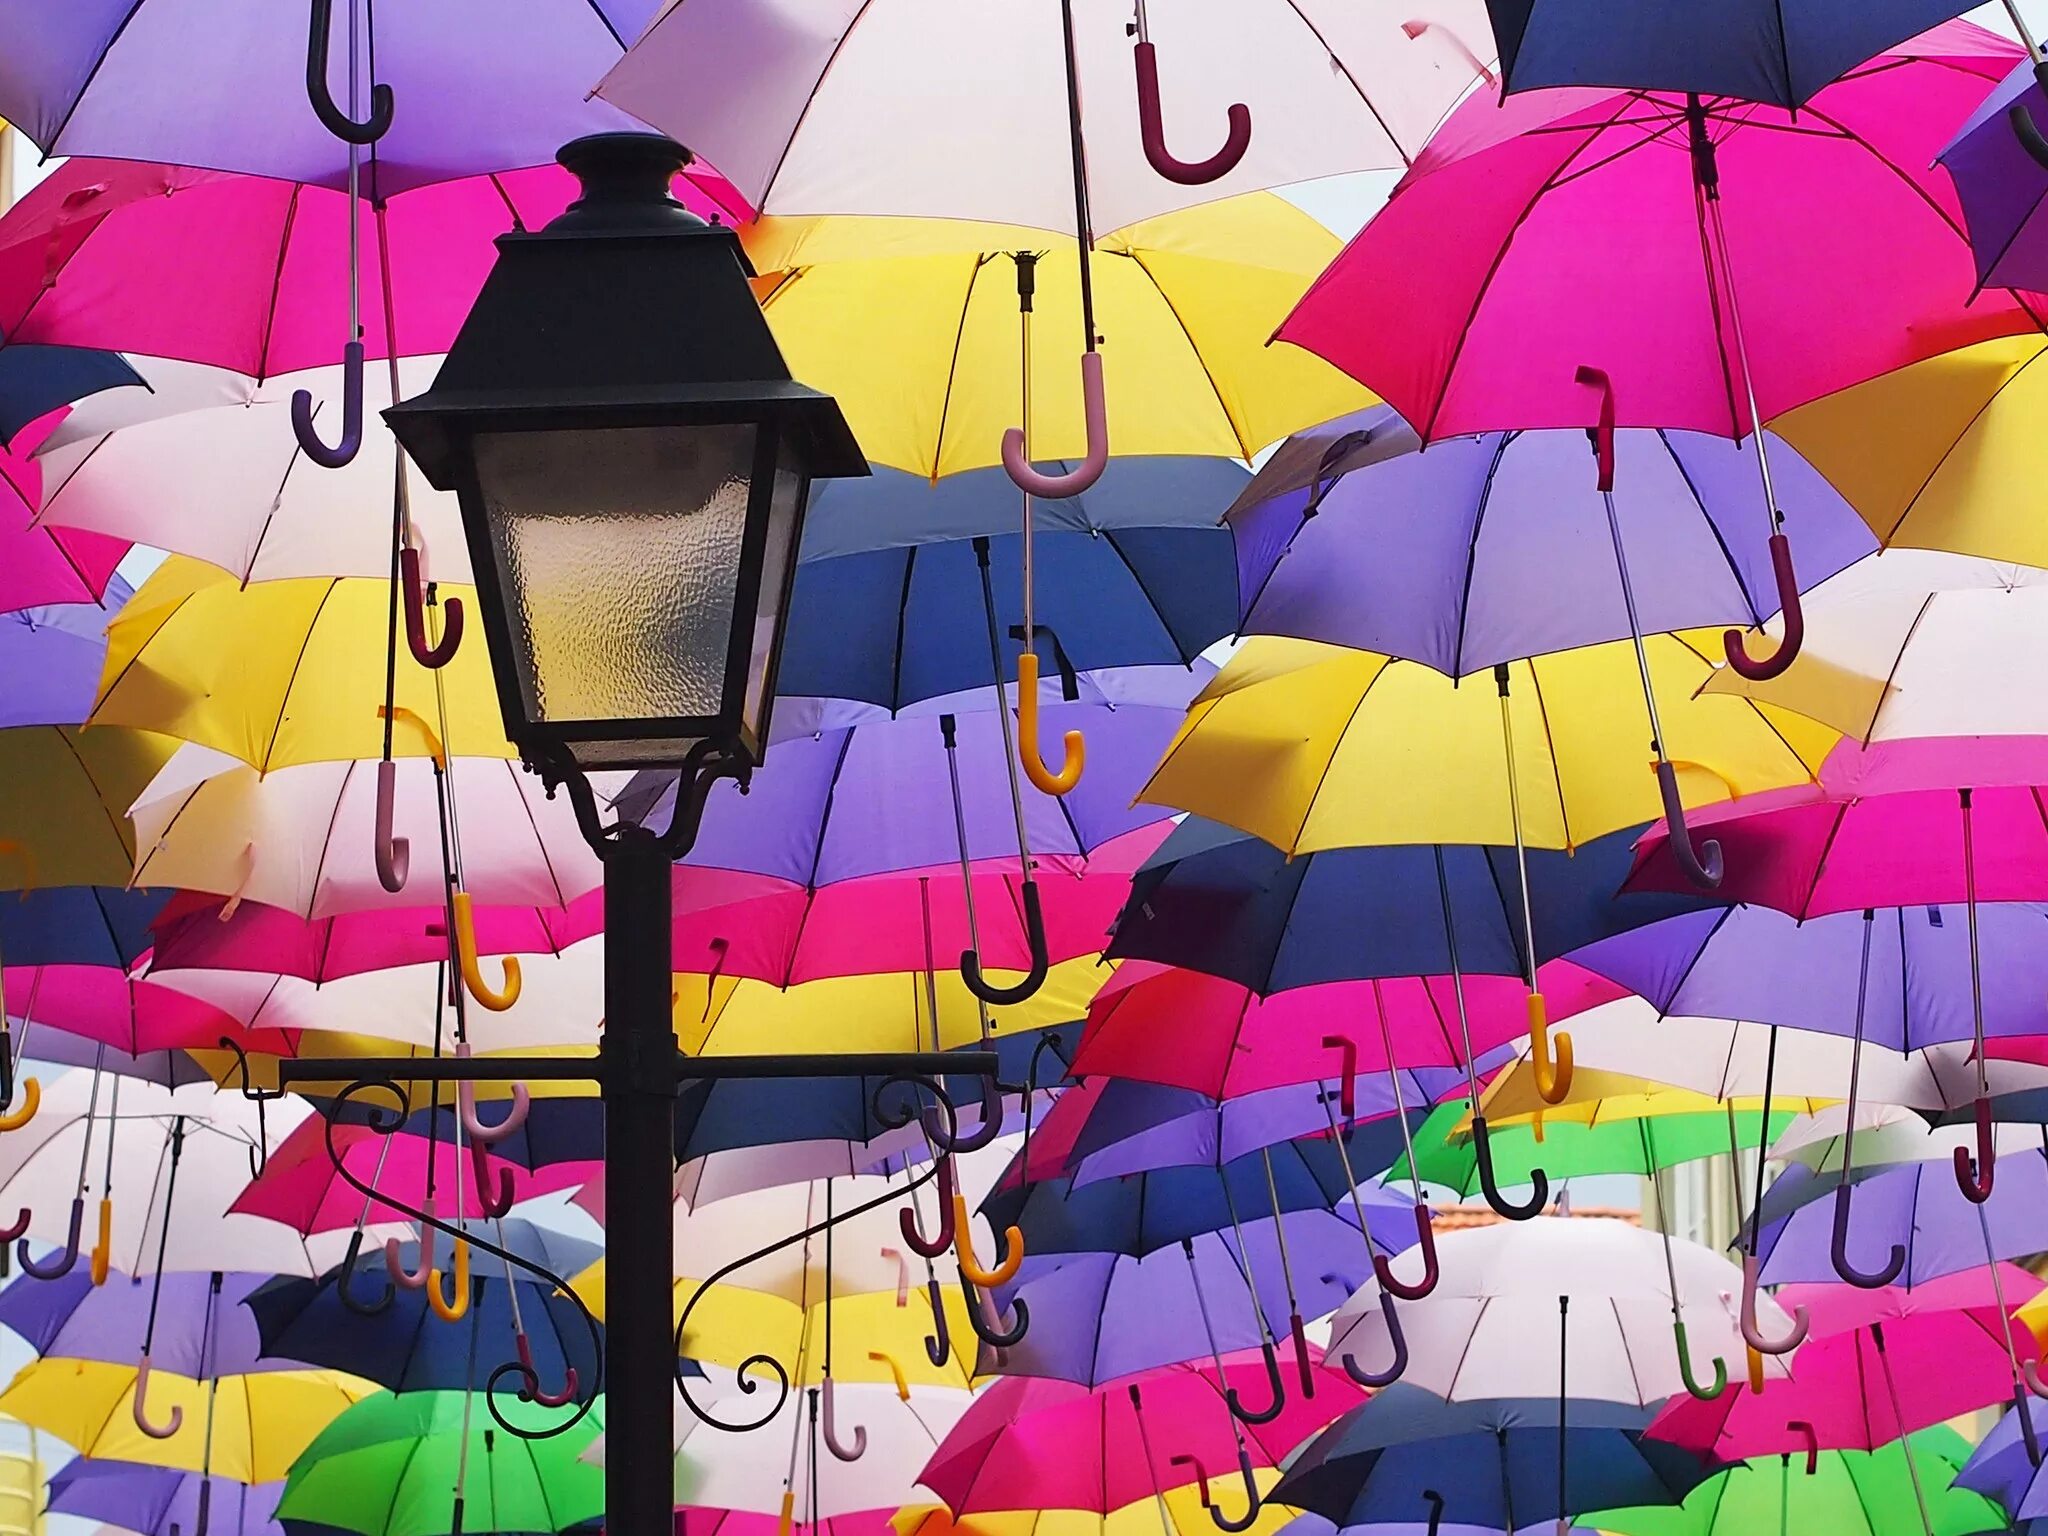 Улица парящих зонтиков, Агеда, Португалия. Разноцветные зонтики. Разноцветный зонт. Зонтики яркие. You take an umbrella today